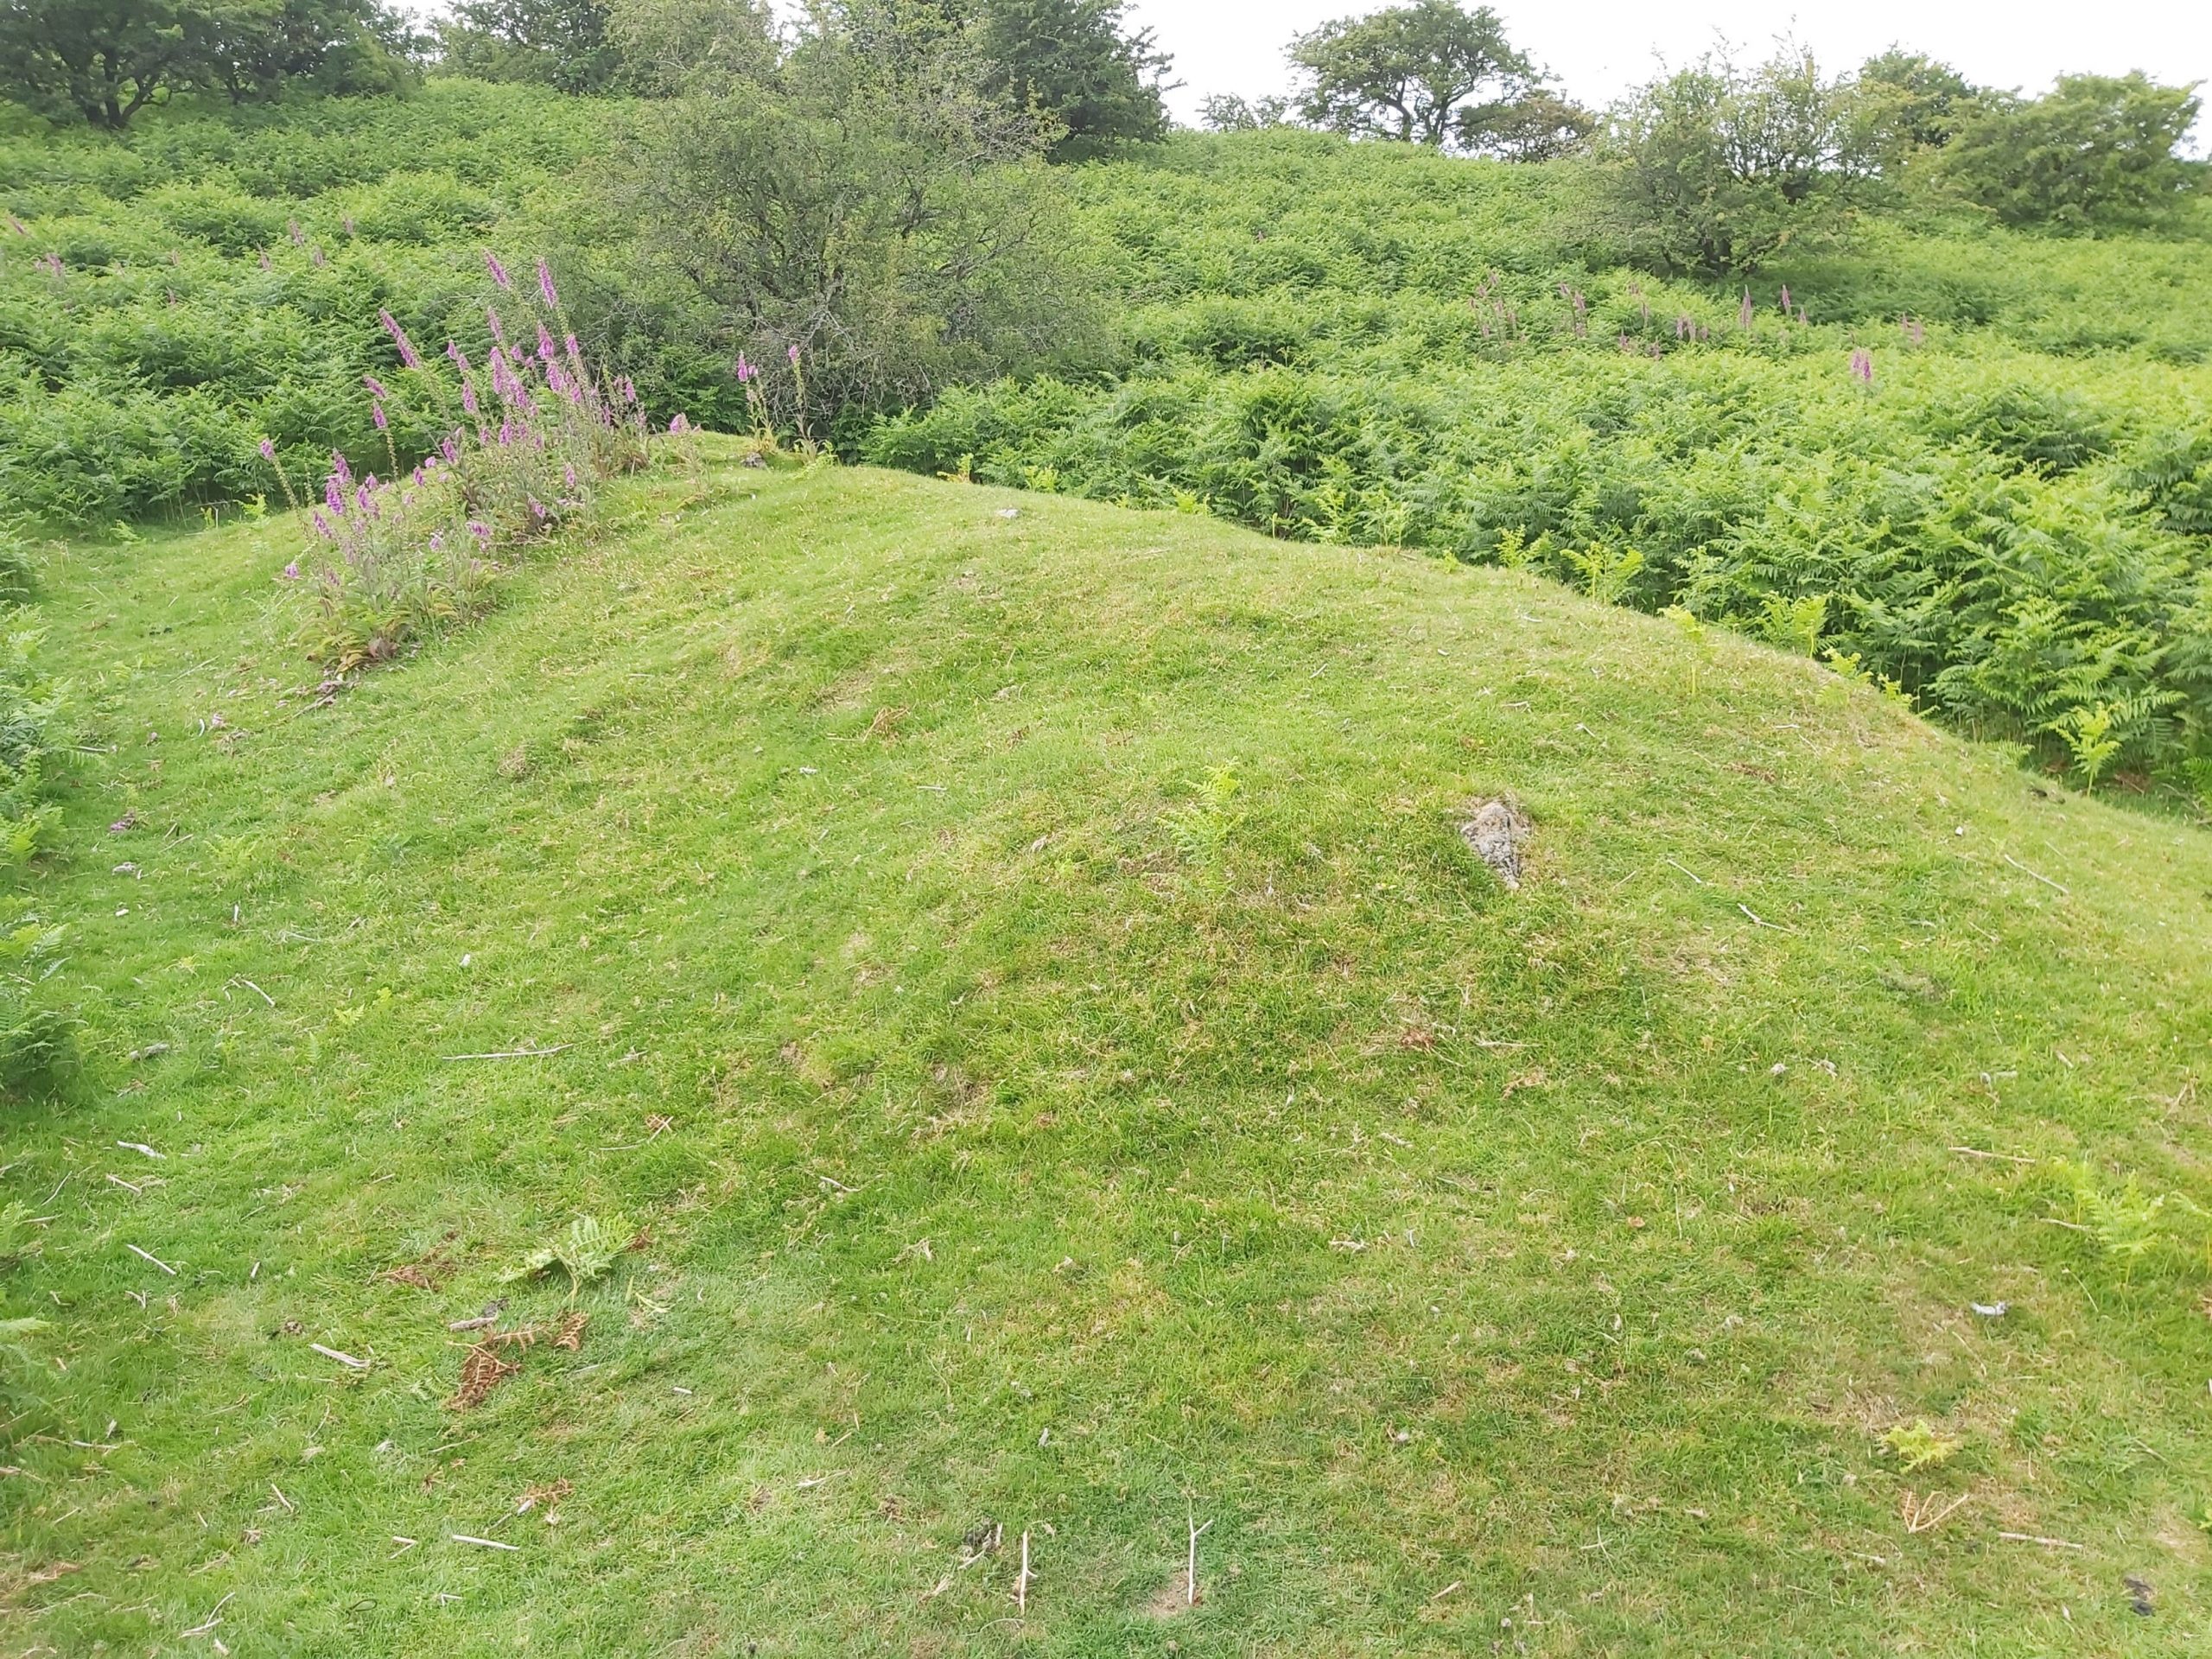 3. Pillow Mound 1